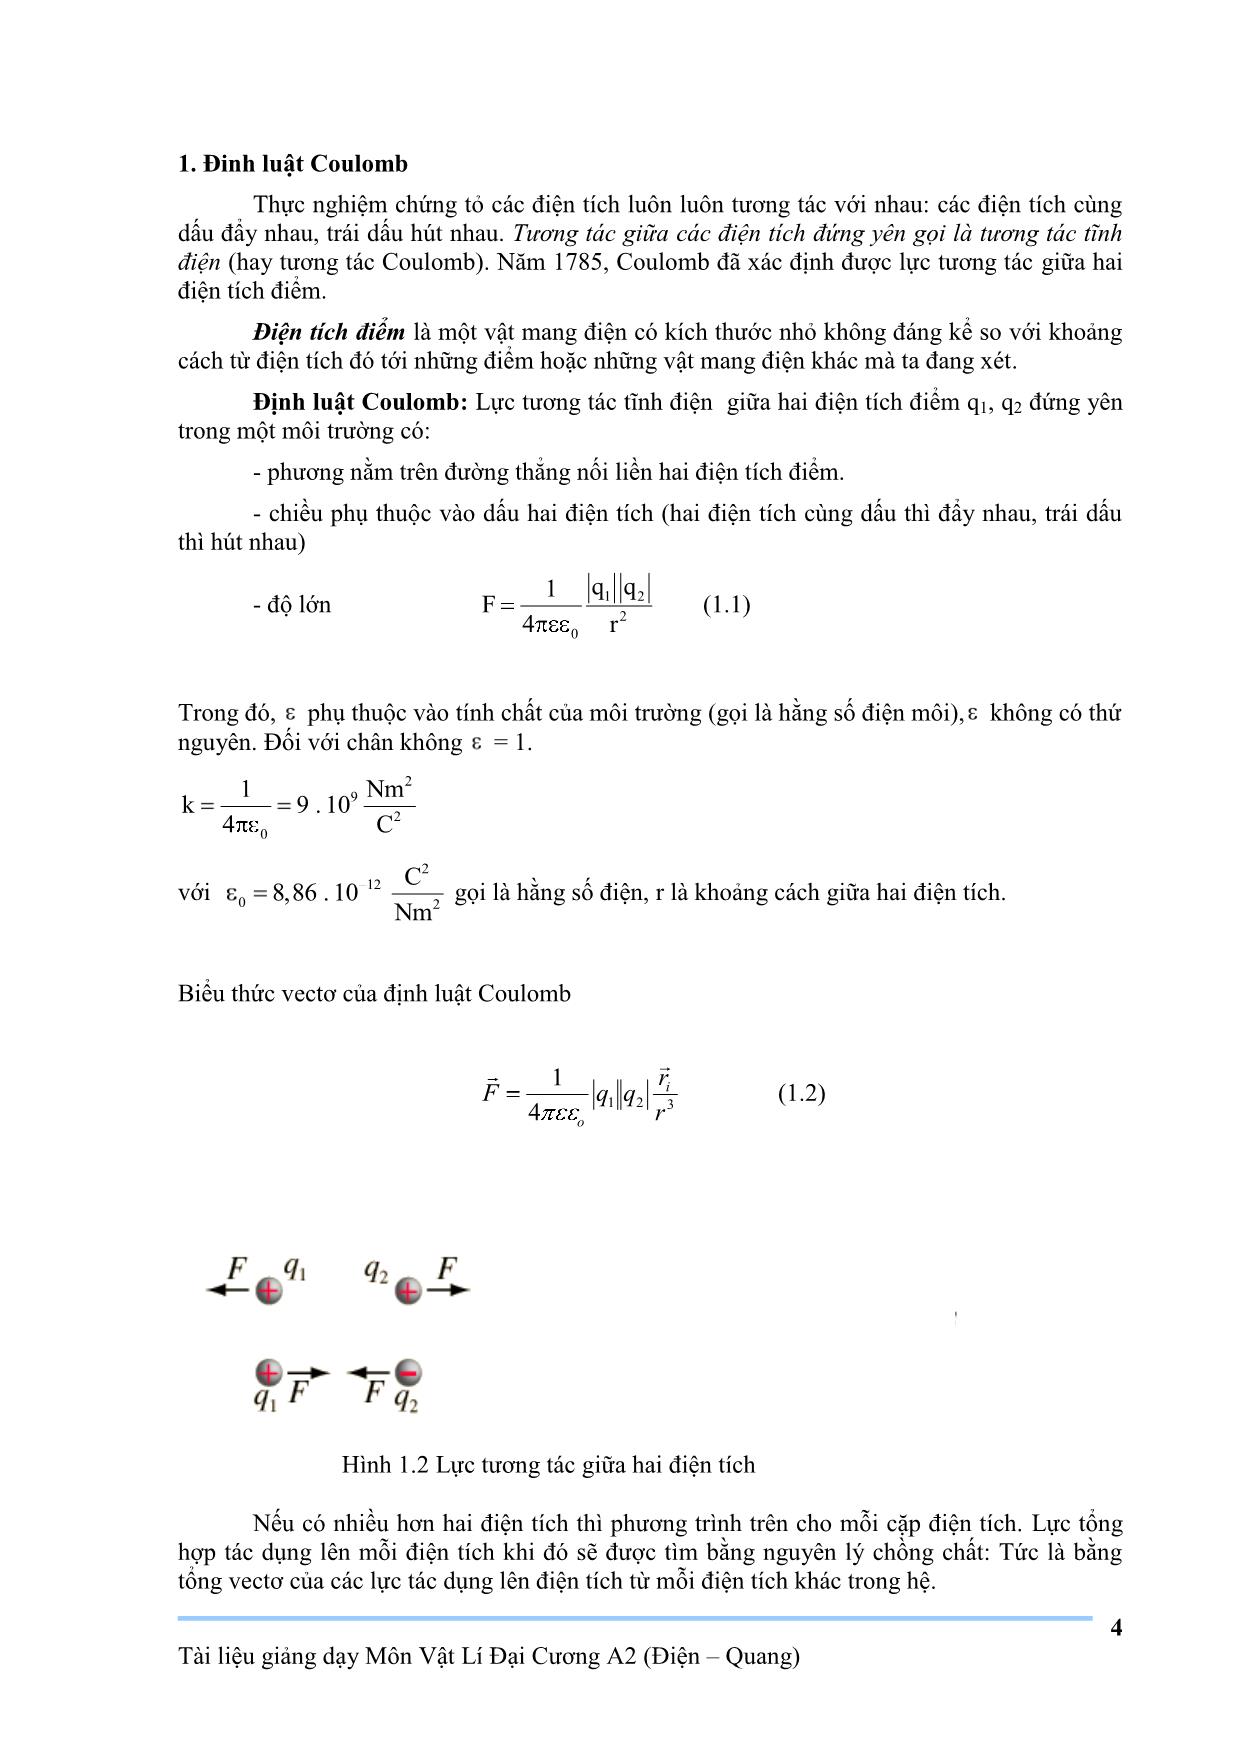 Giáo trình Vật lý đại cương A2 trang 4